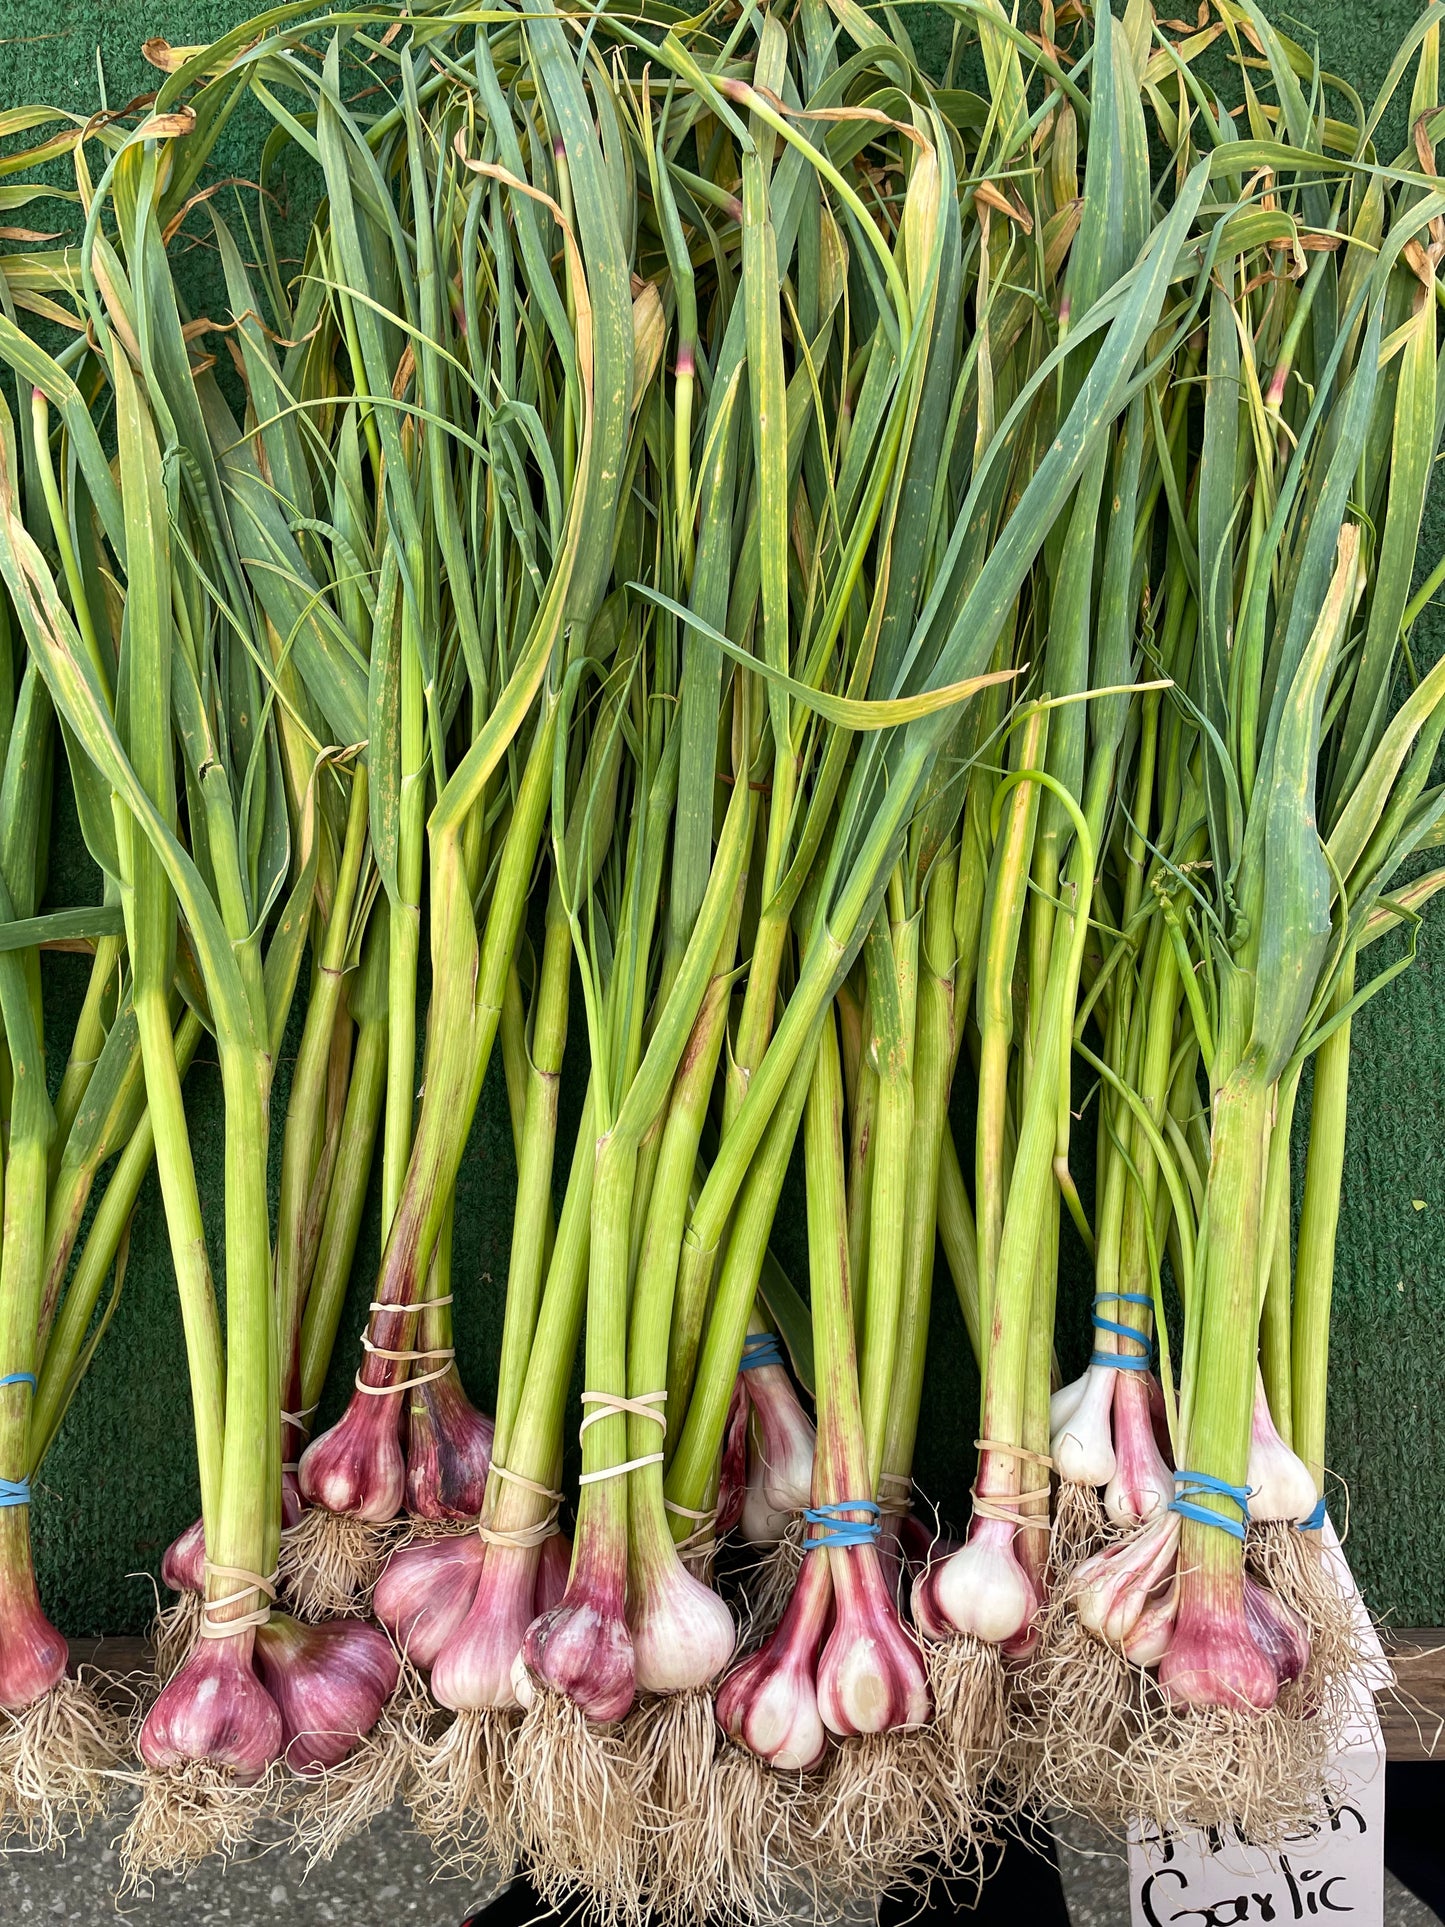 Garlic(Each)